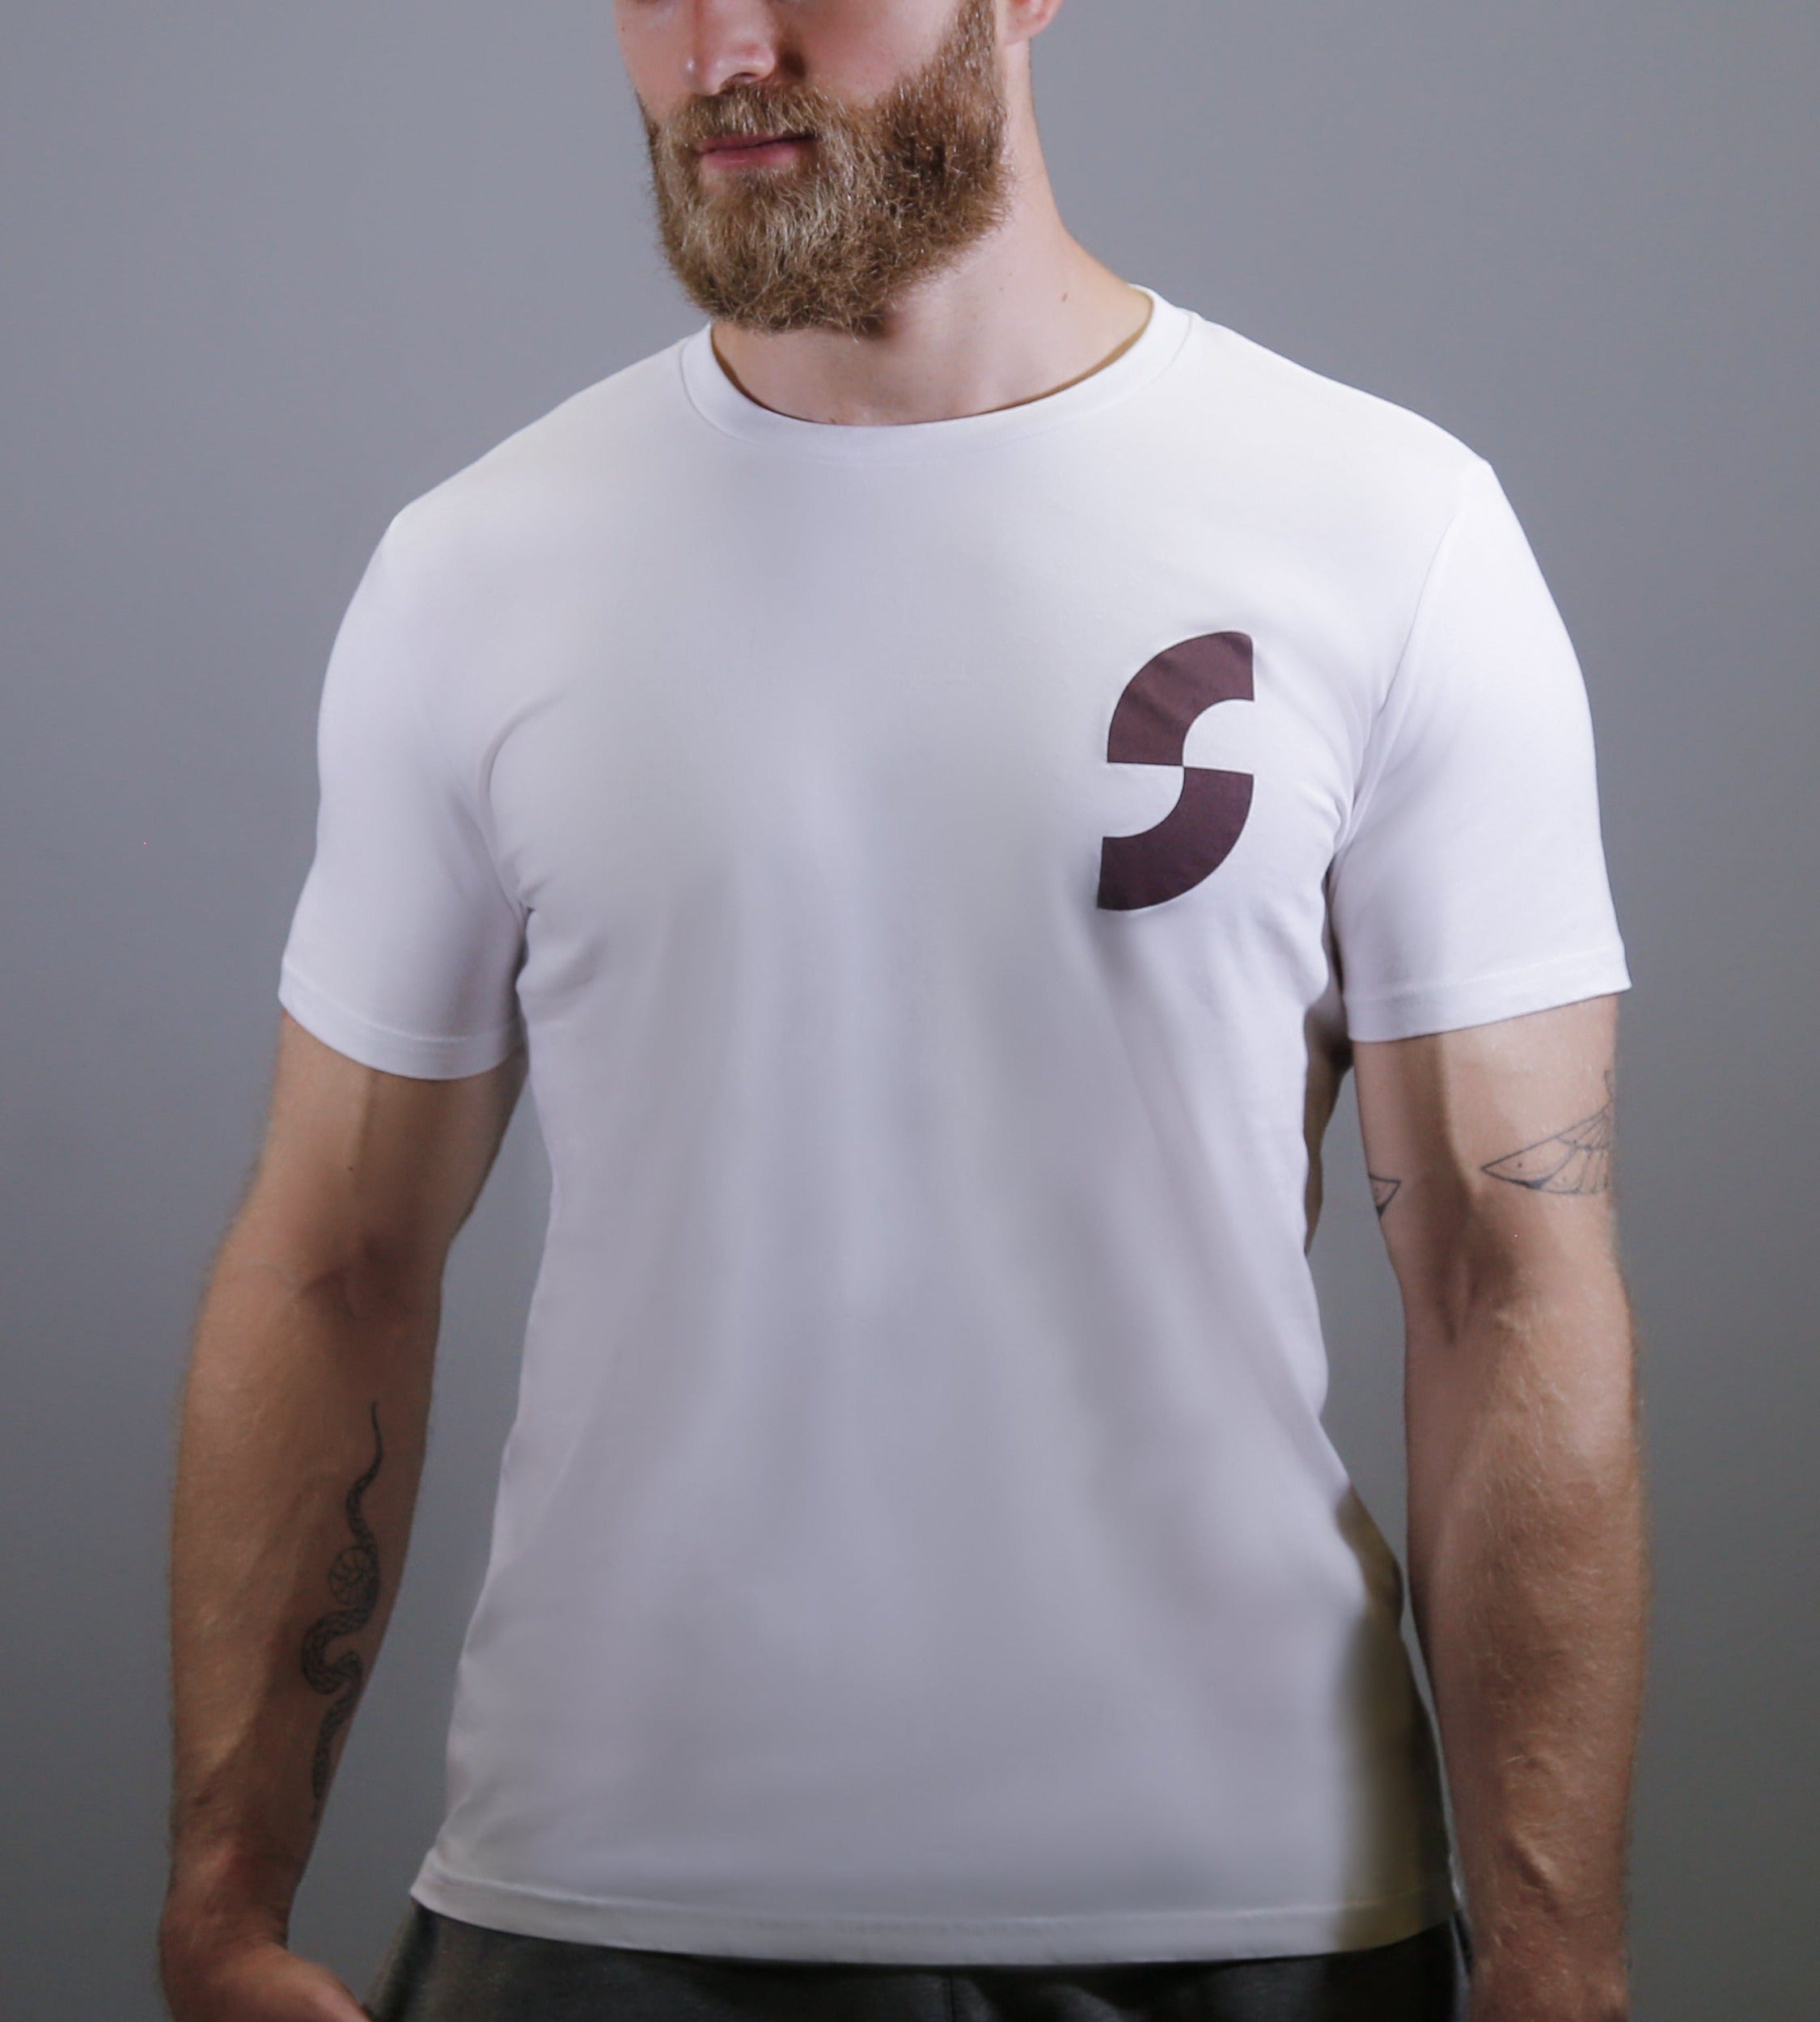 Retro White T-shirt. T4